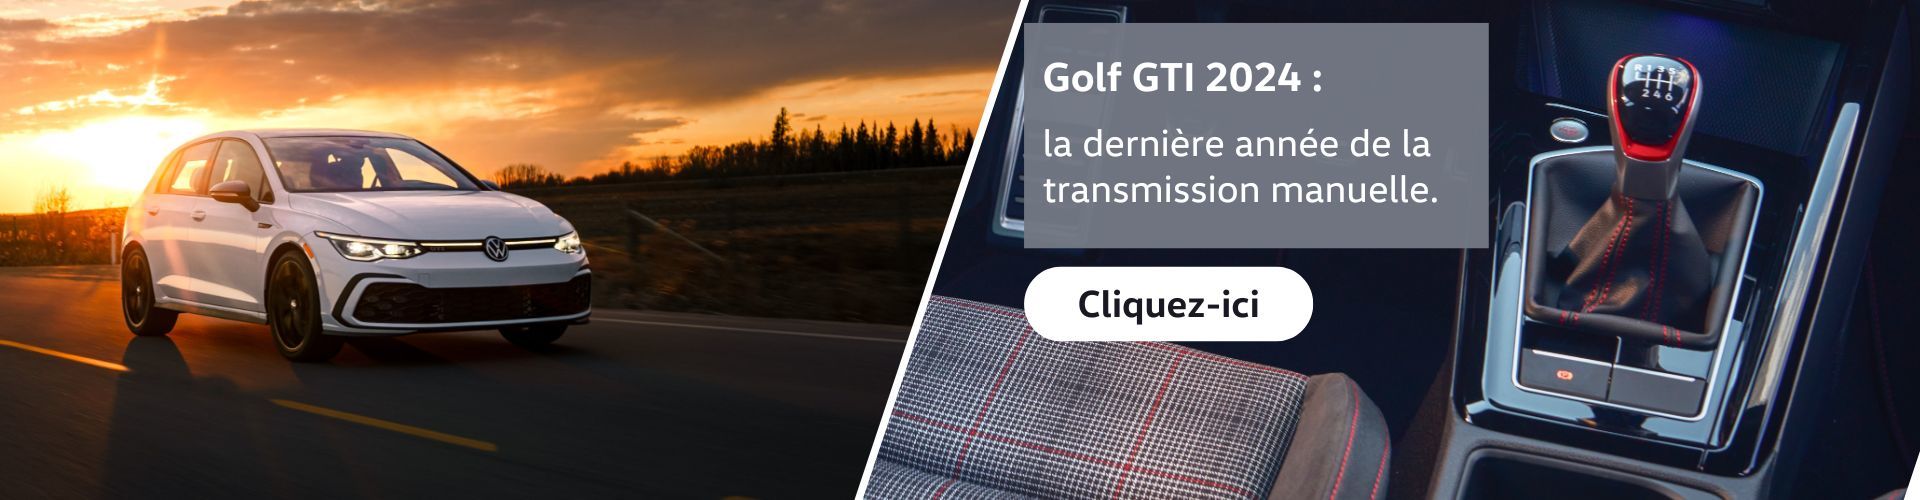 Golf GTI 2024 : Découvrez les dernières fonctionnalités de performances de la nouvelle Golf GTI.